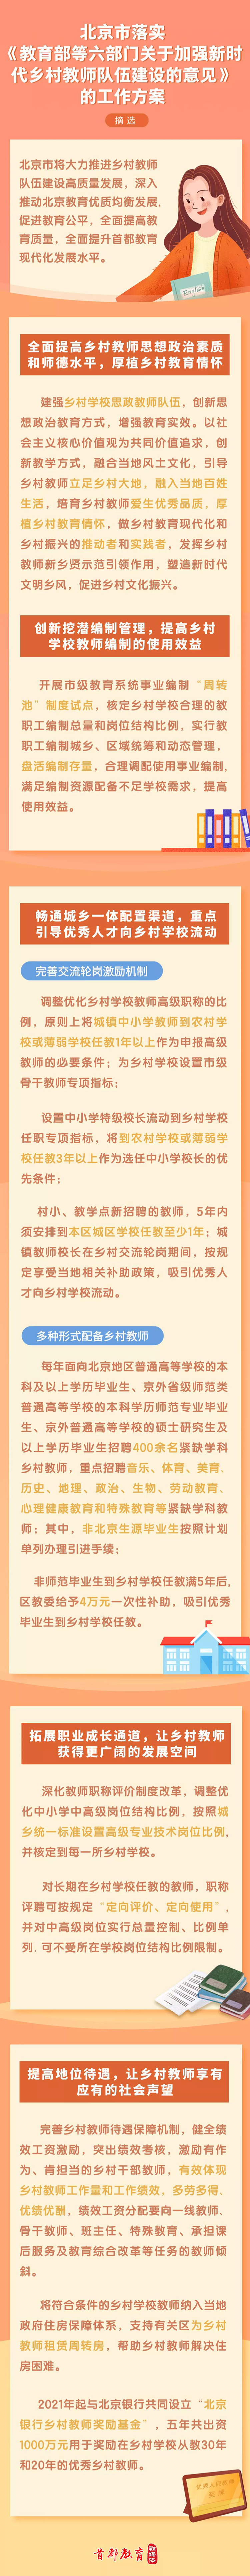 《北京市落实〈教育部等六部门关于加强新时代乡村教师队伍建设的意见〉的工作方案》印发